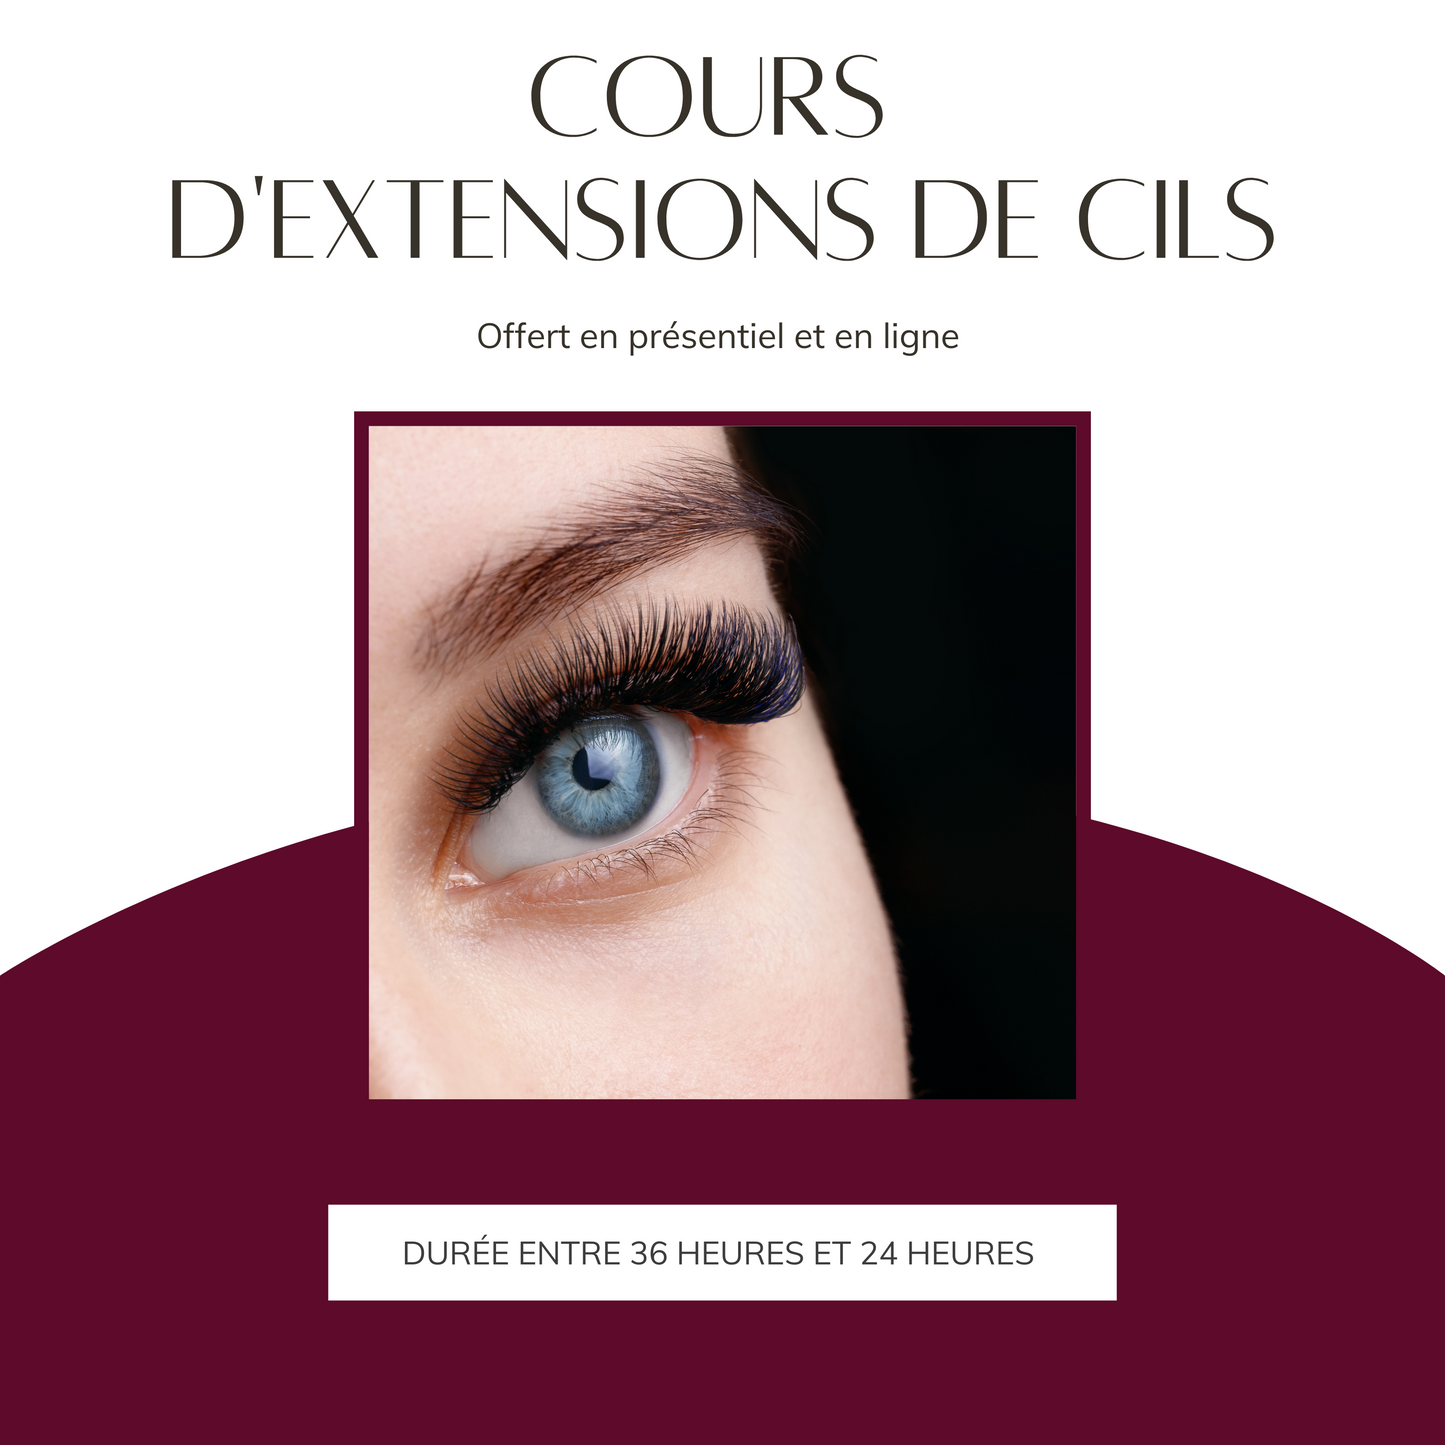 Cours Extensions de Cils Classique (6920856043586)